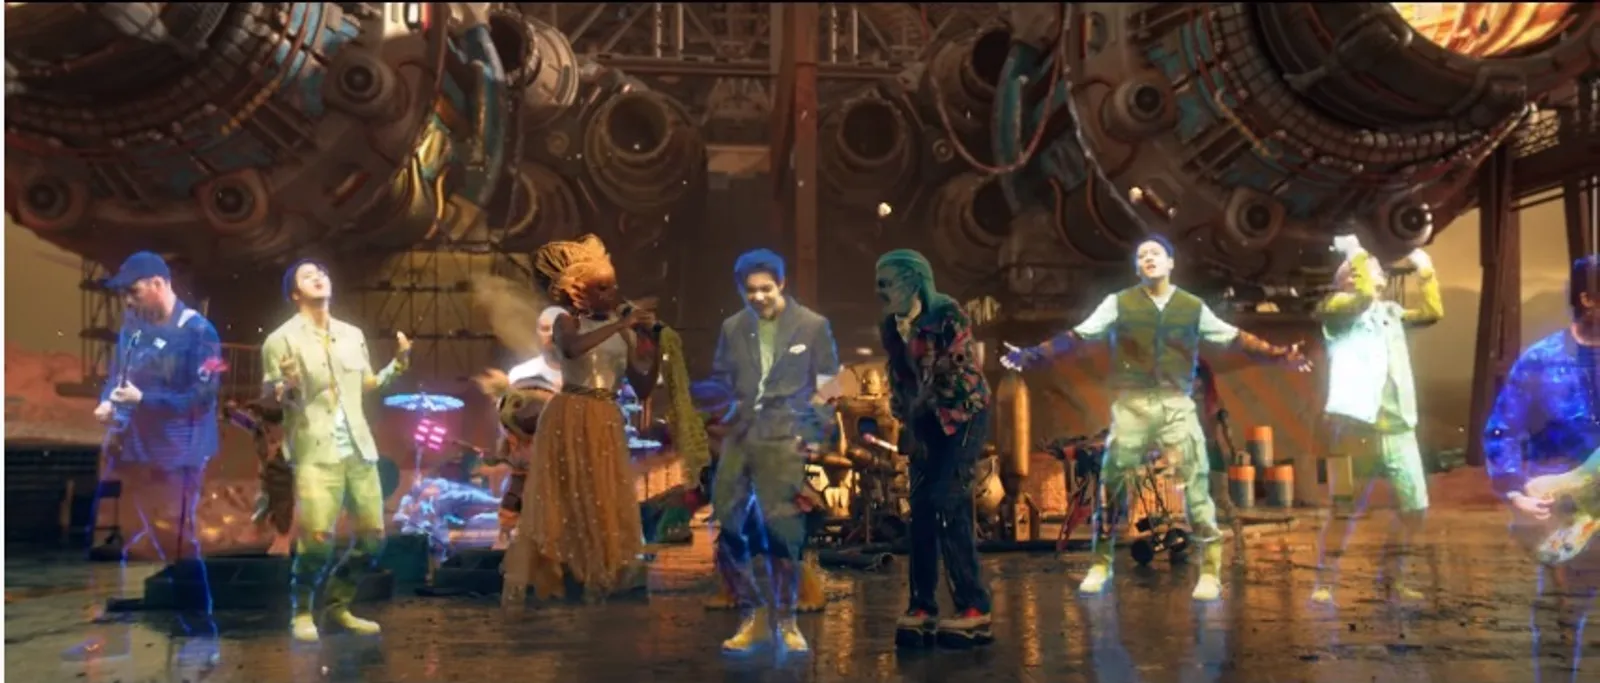 Tiga Planet Jadi Satu, Ini Hal Menarik MV "Universe" Coldplay X BTS 